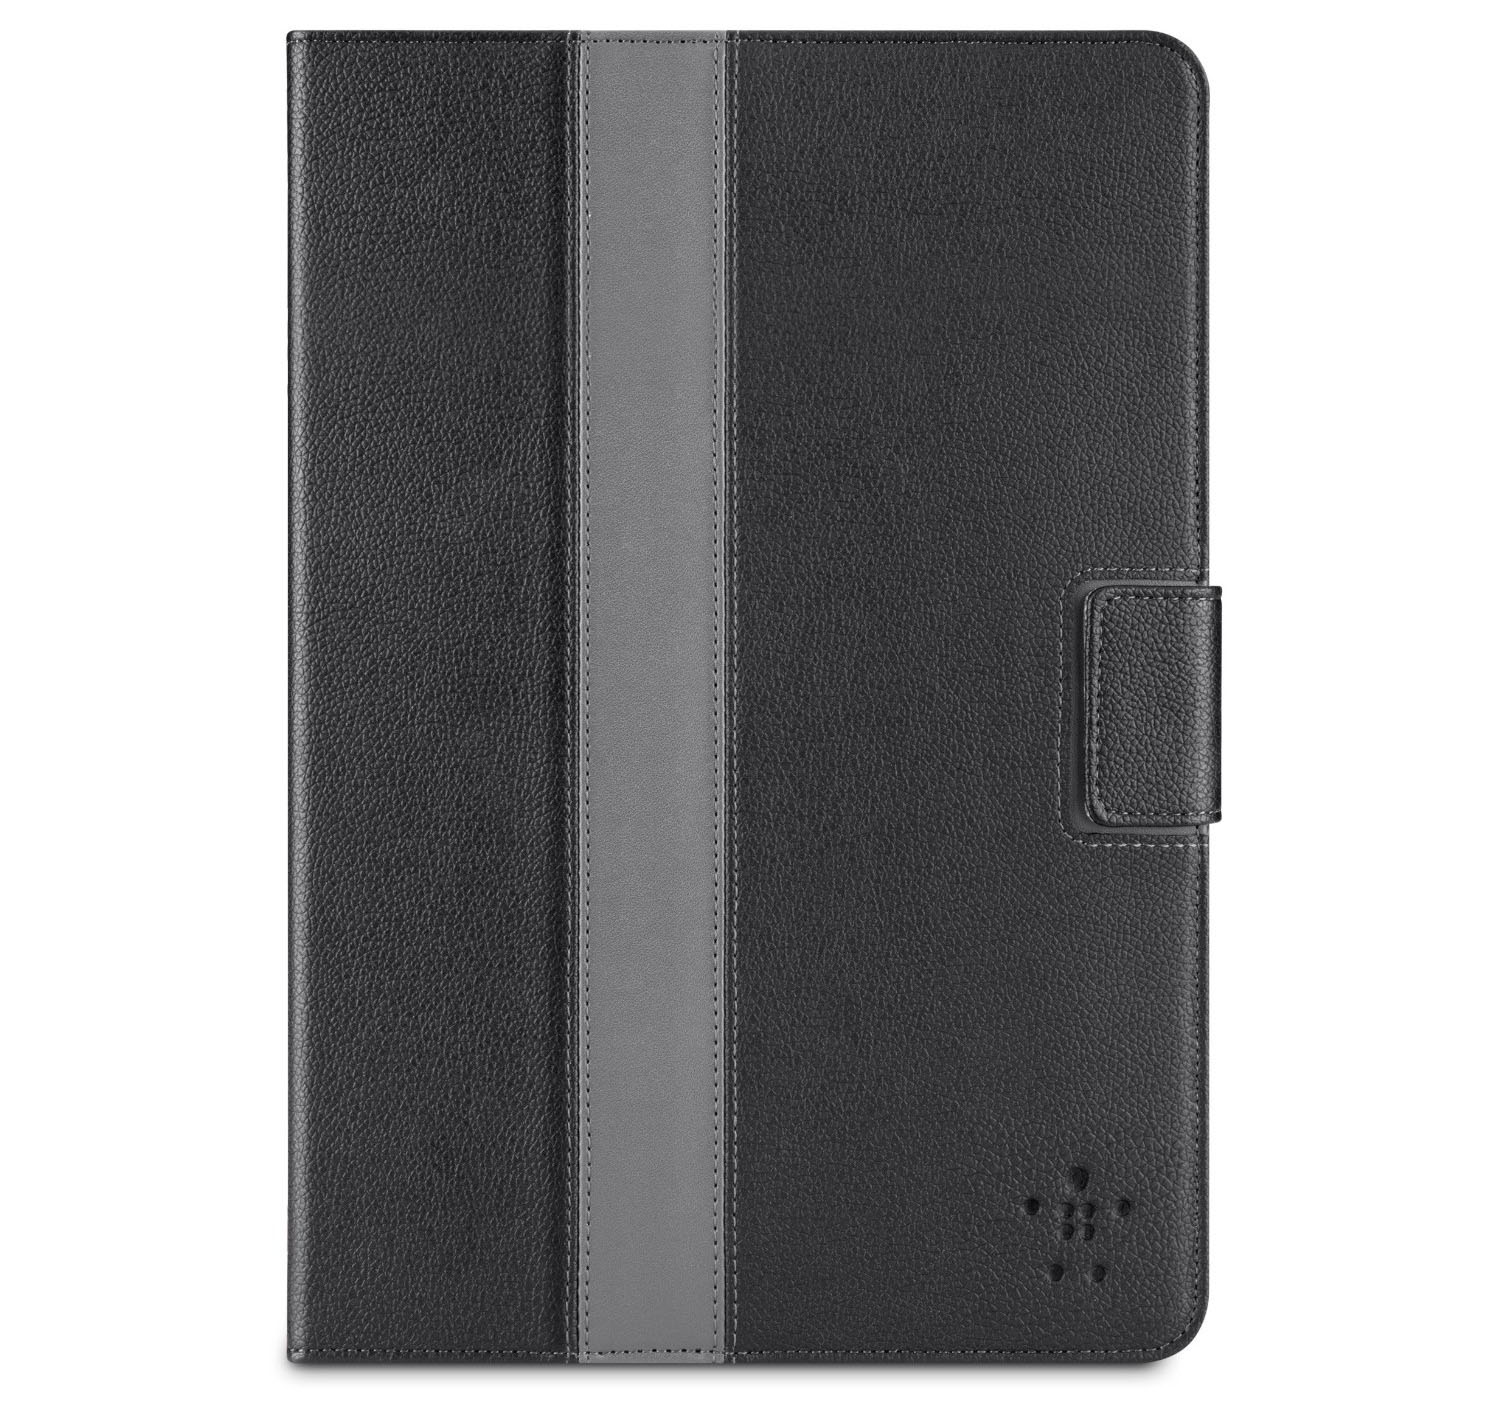 Leather iPad Mini Case